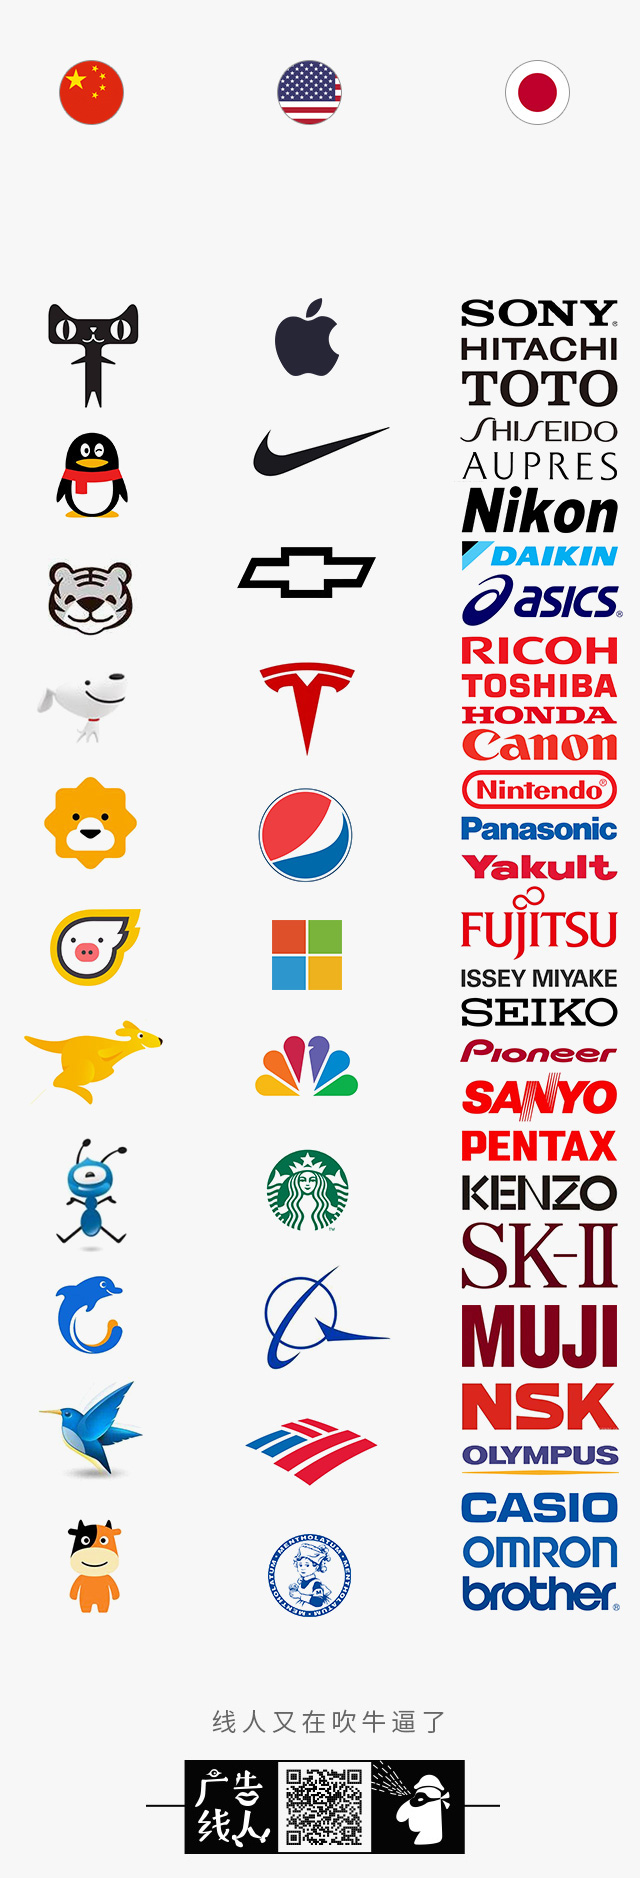 中国/美国/日本,这三个国家logo到底有什么区别?